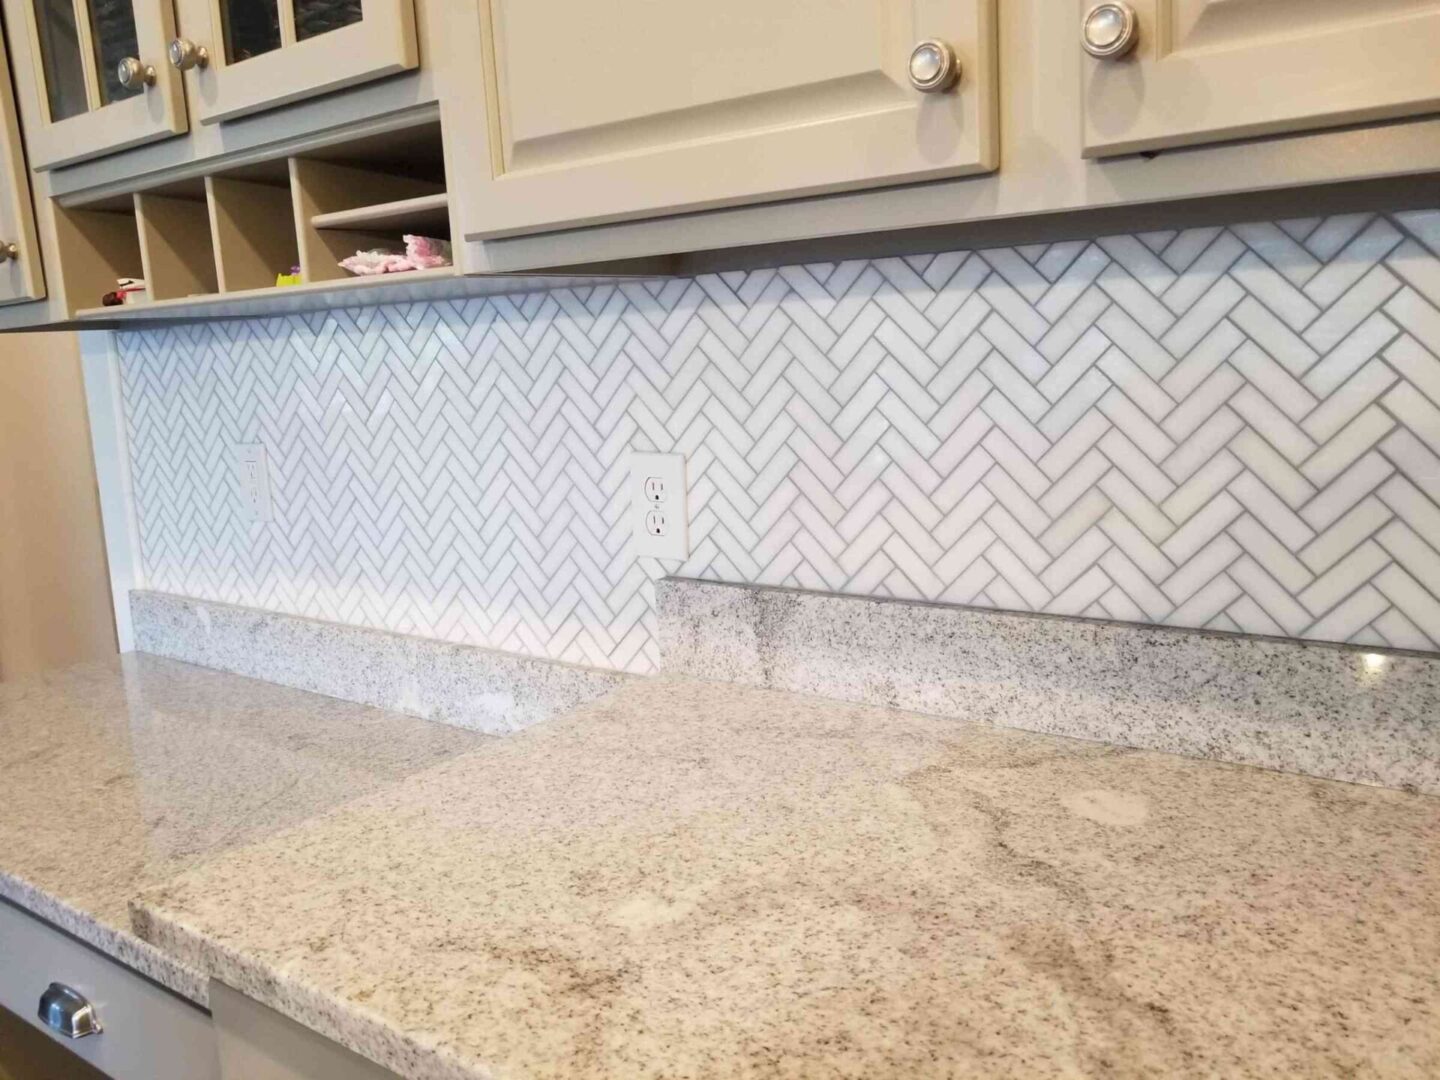 a kitchen countertop